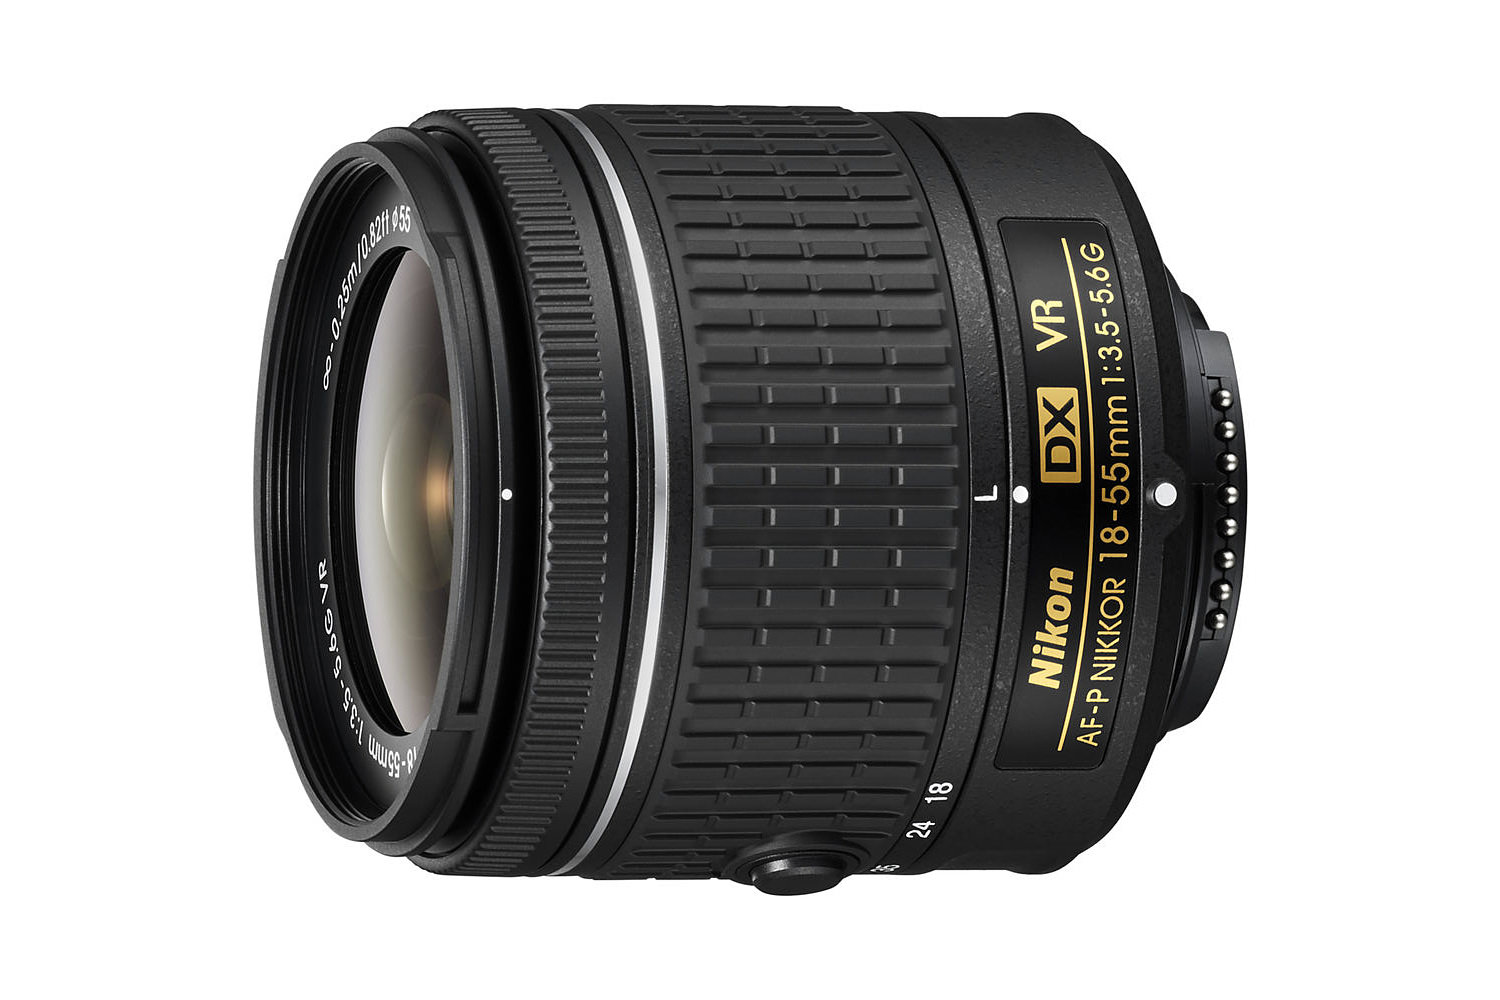 Grens Vroegst Prestige Nikon 18-55mm f/3.5-5.6G DX VR AF-P Review